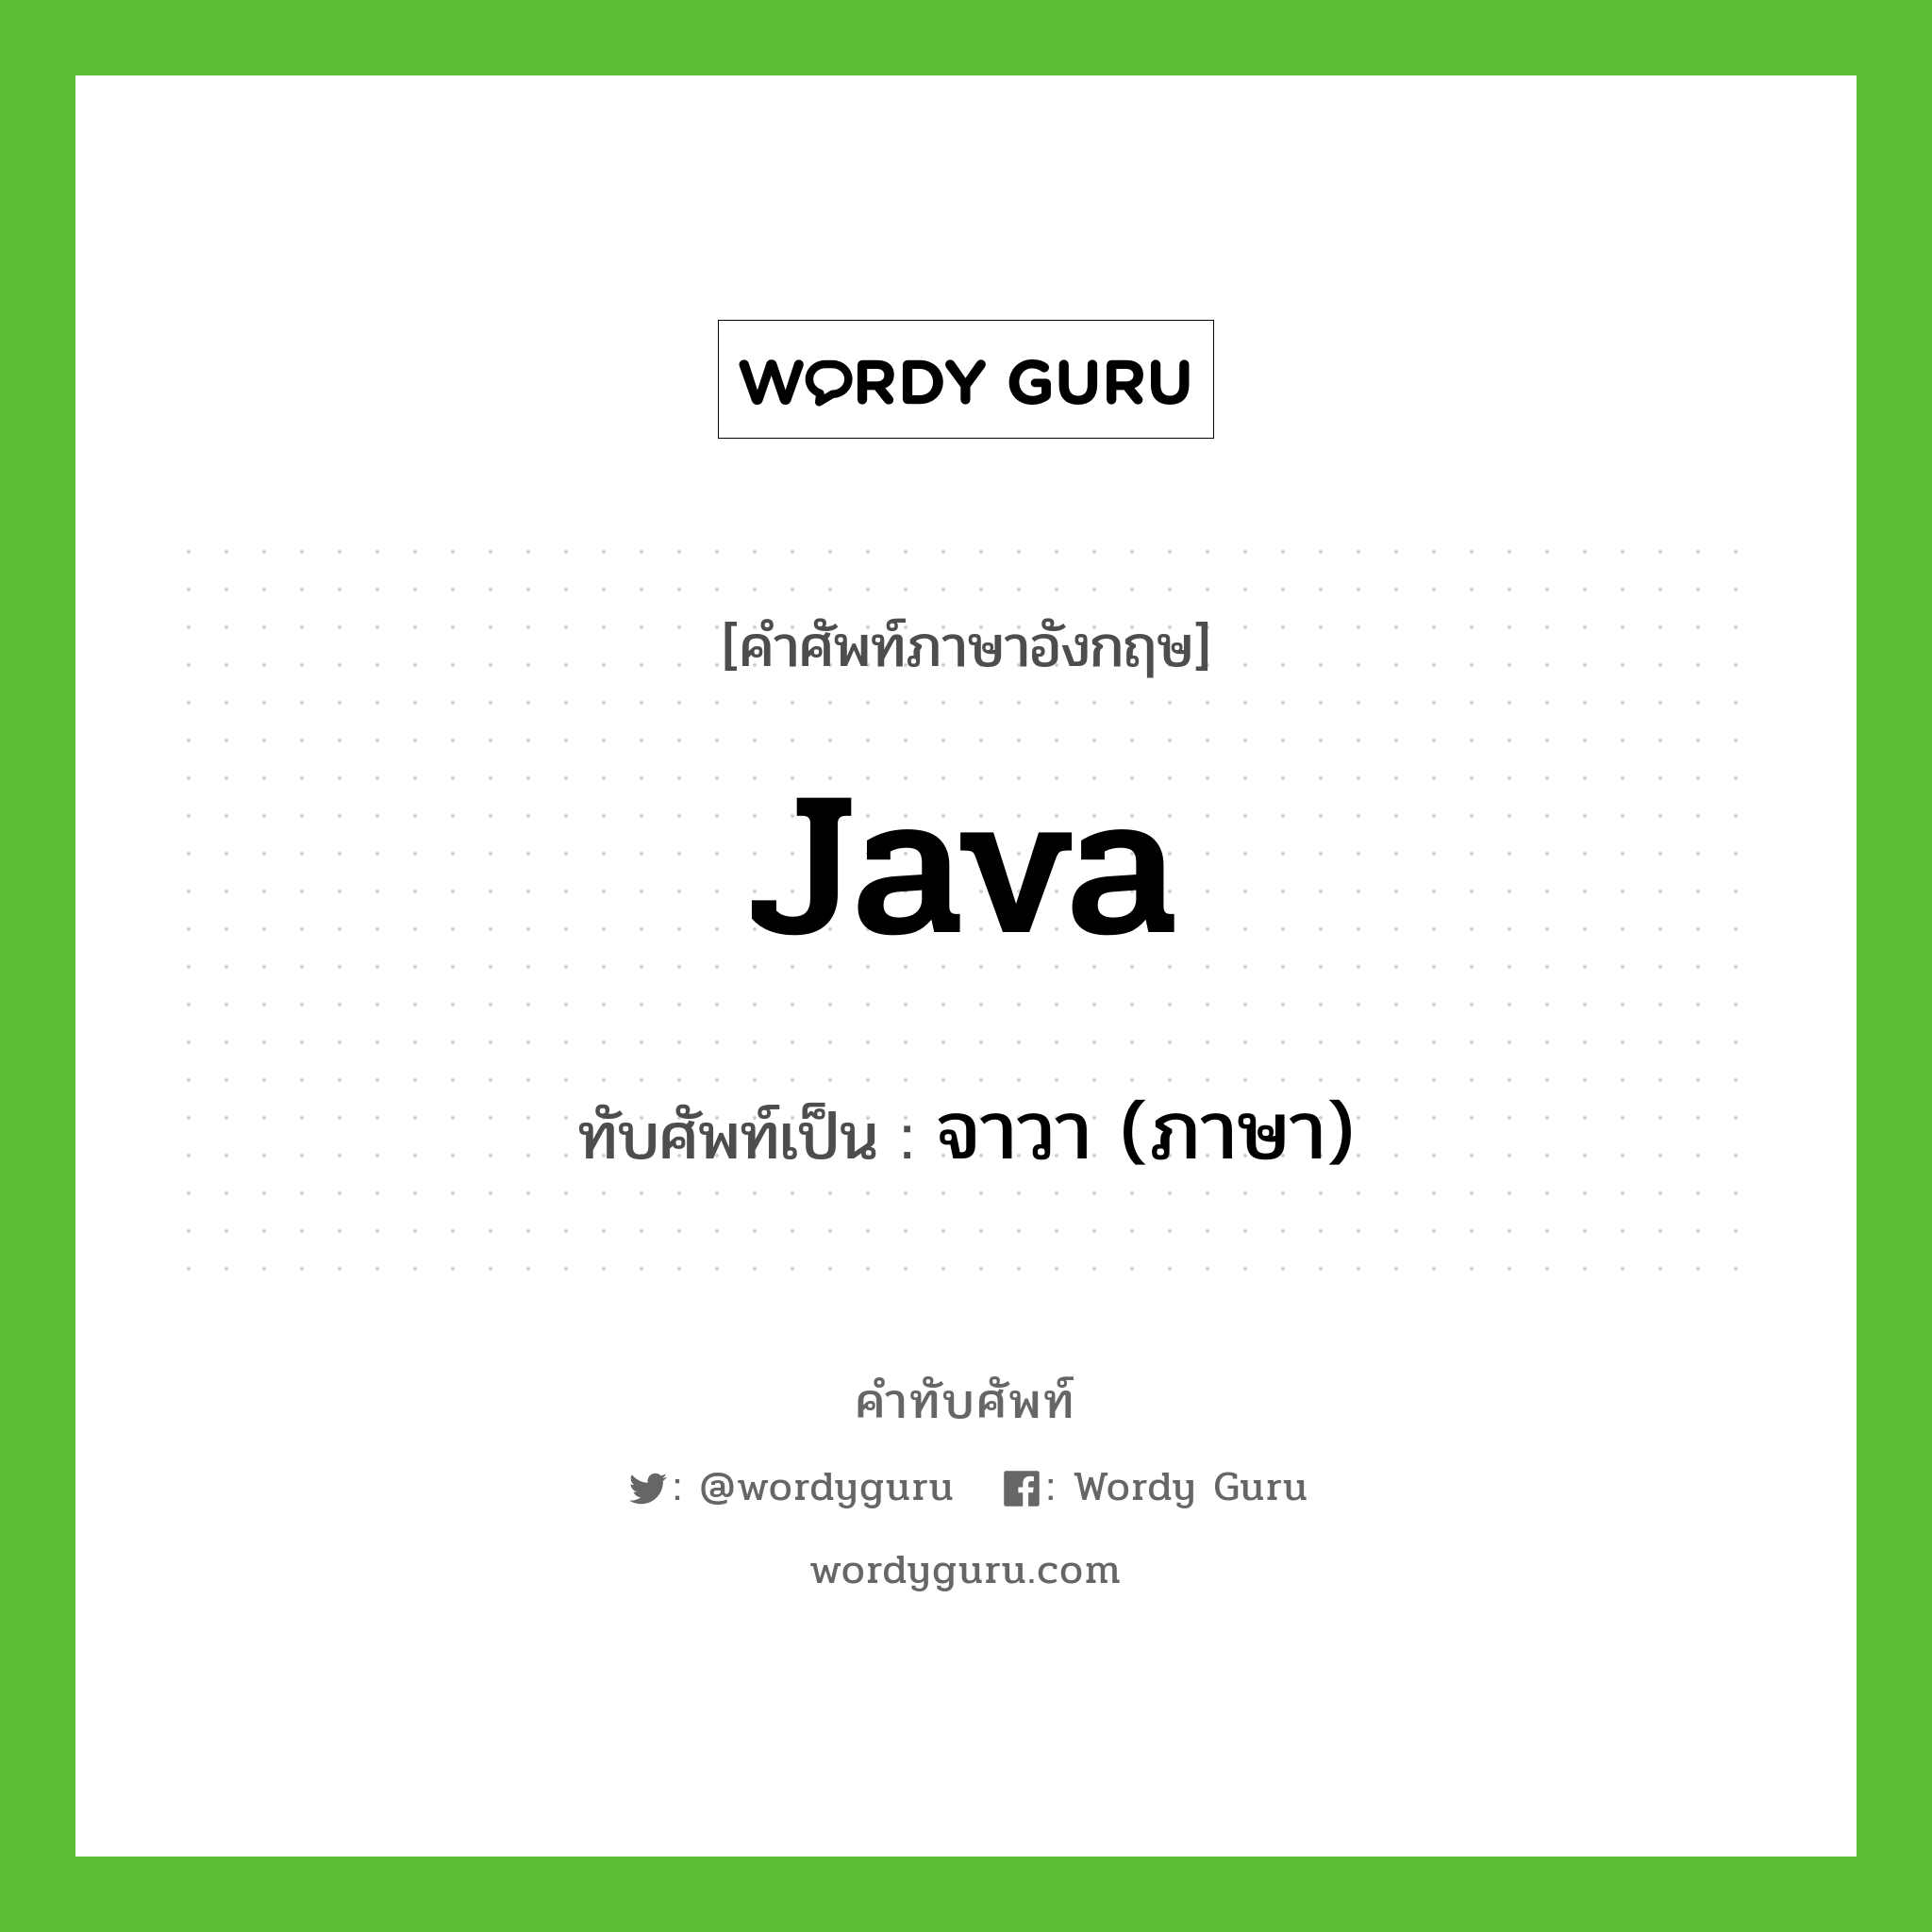 Java เขียนเป็นคำไทยว่าอะไร?, คำศัพท์ภาษาอังกฤษ Java ทับศัพท์เป็น จาวา (ภาษา)